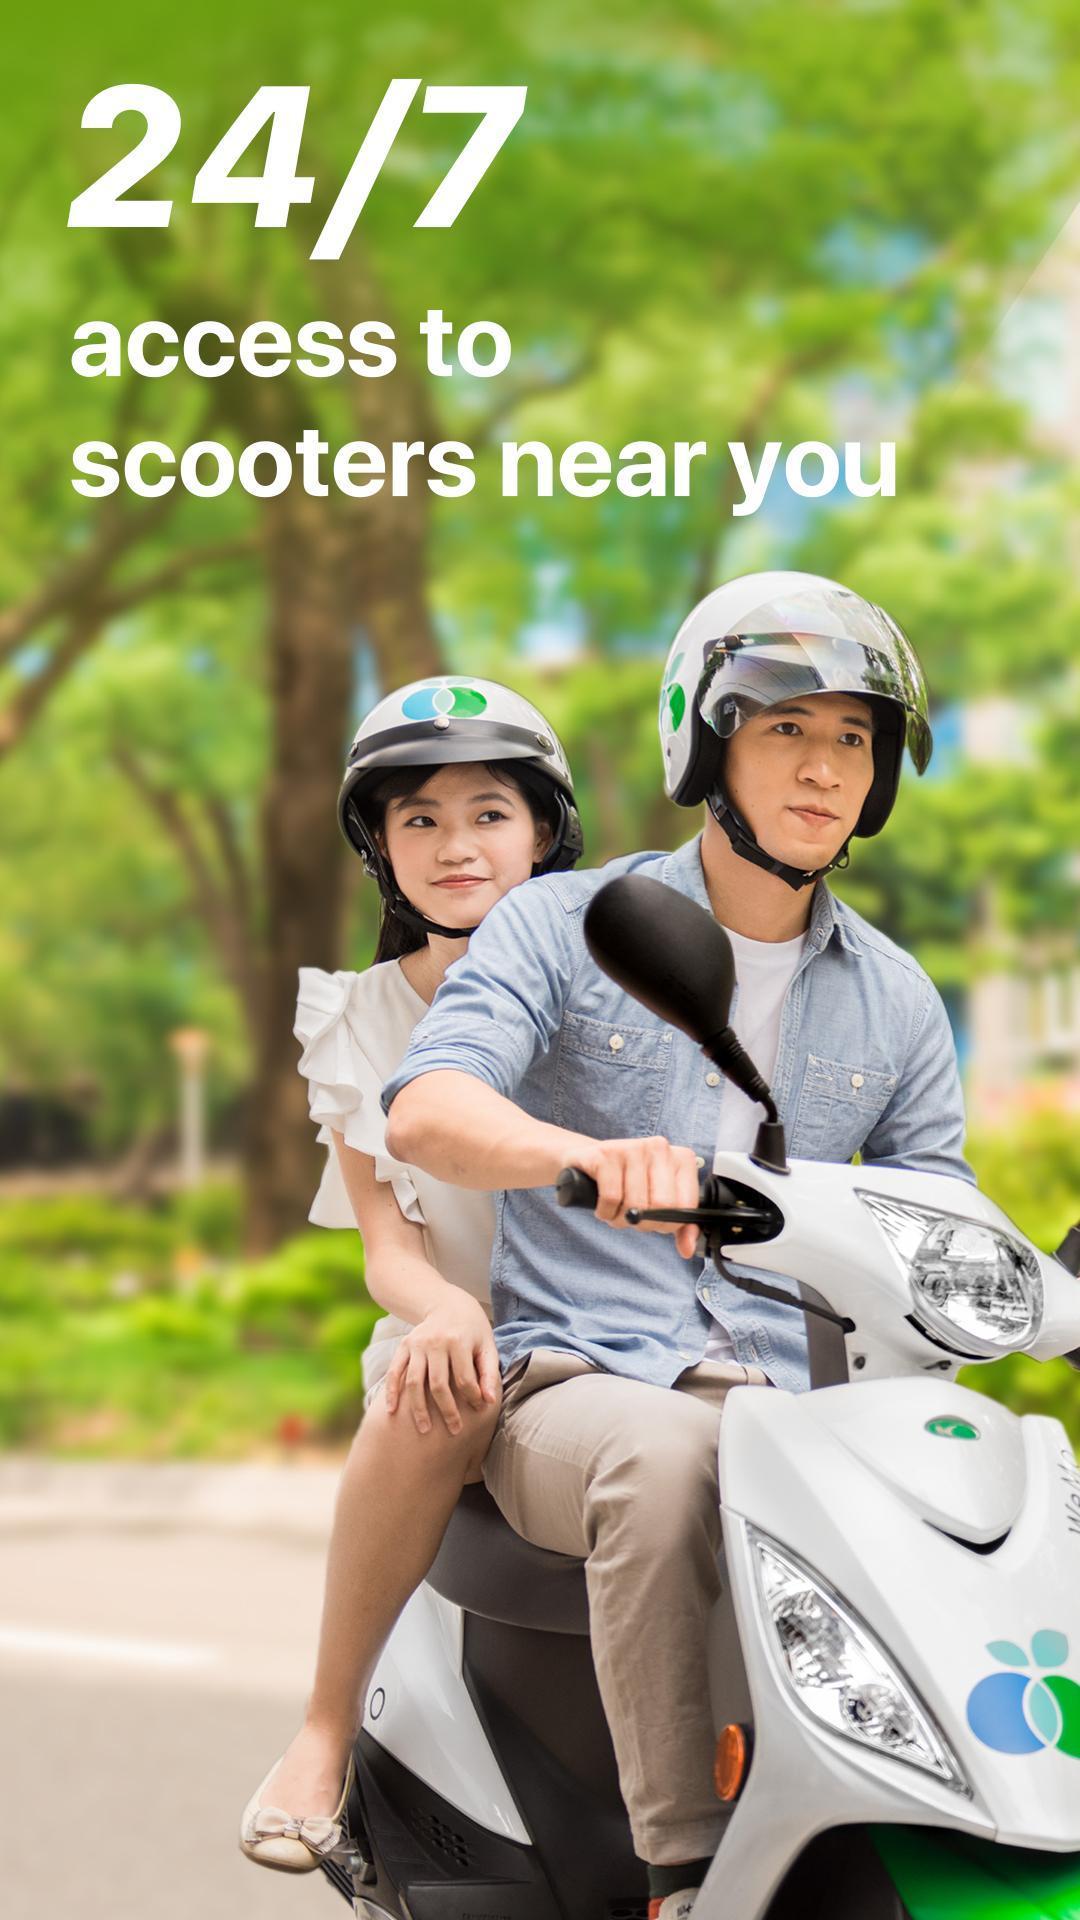 台湾のスクーターシェアリング新興企業WeMoがシリーズAの資金調達を確保